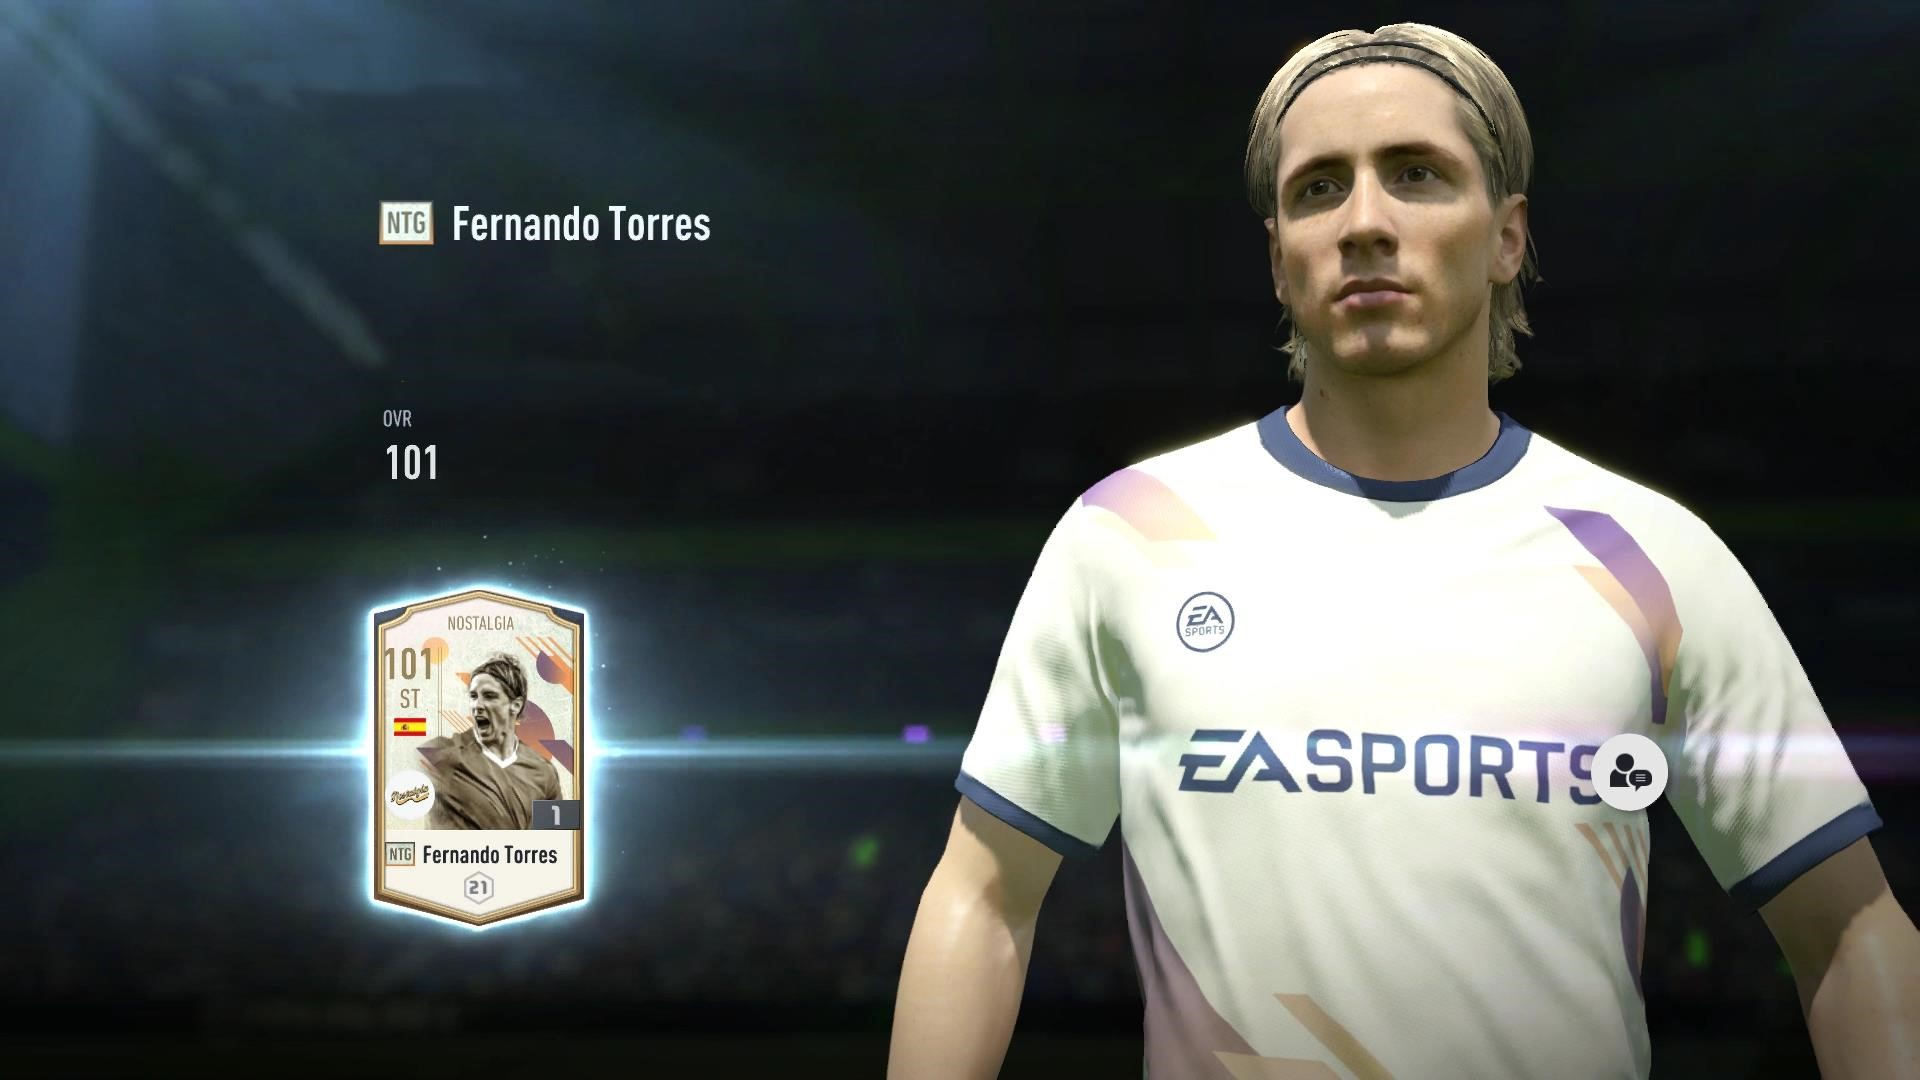 Fernando Torres là một cầu thủ bóng đá nổi tiếng của Tây Ban Nha, được biết đến với biệt danh 